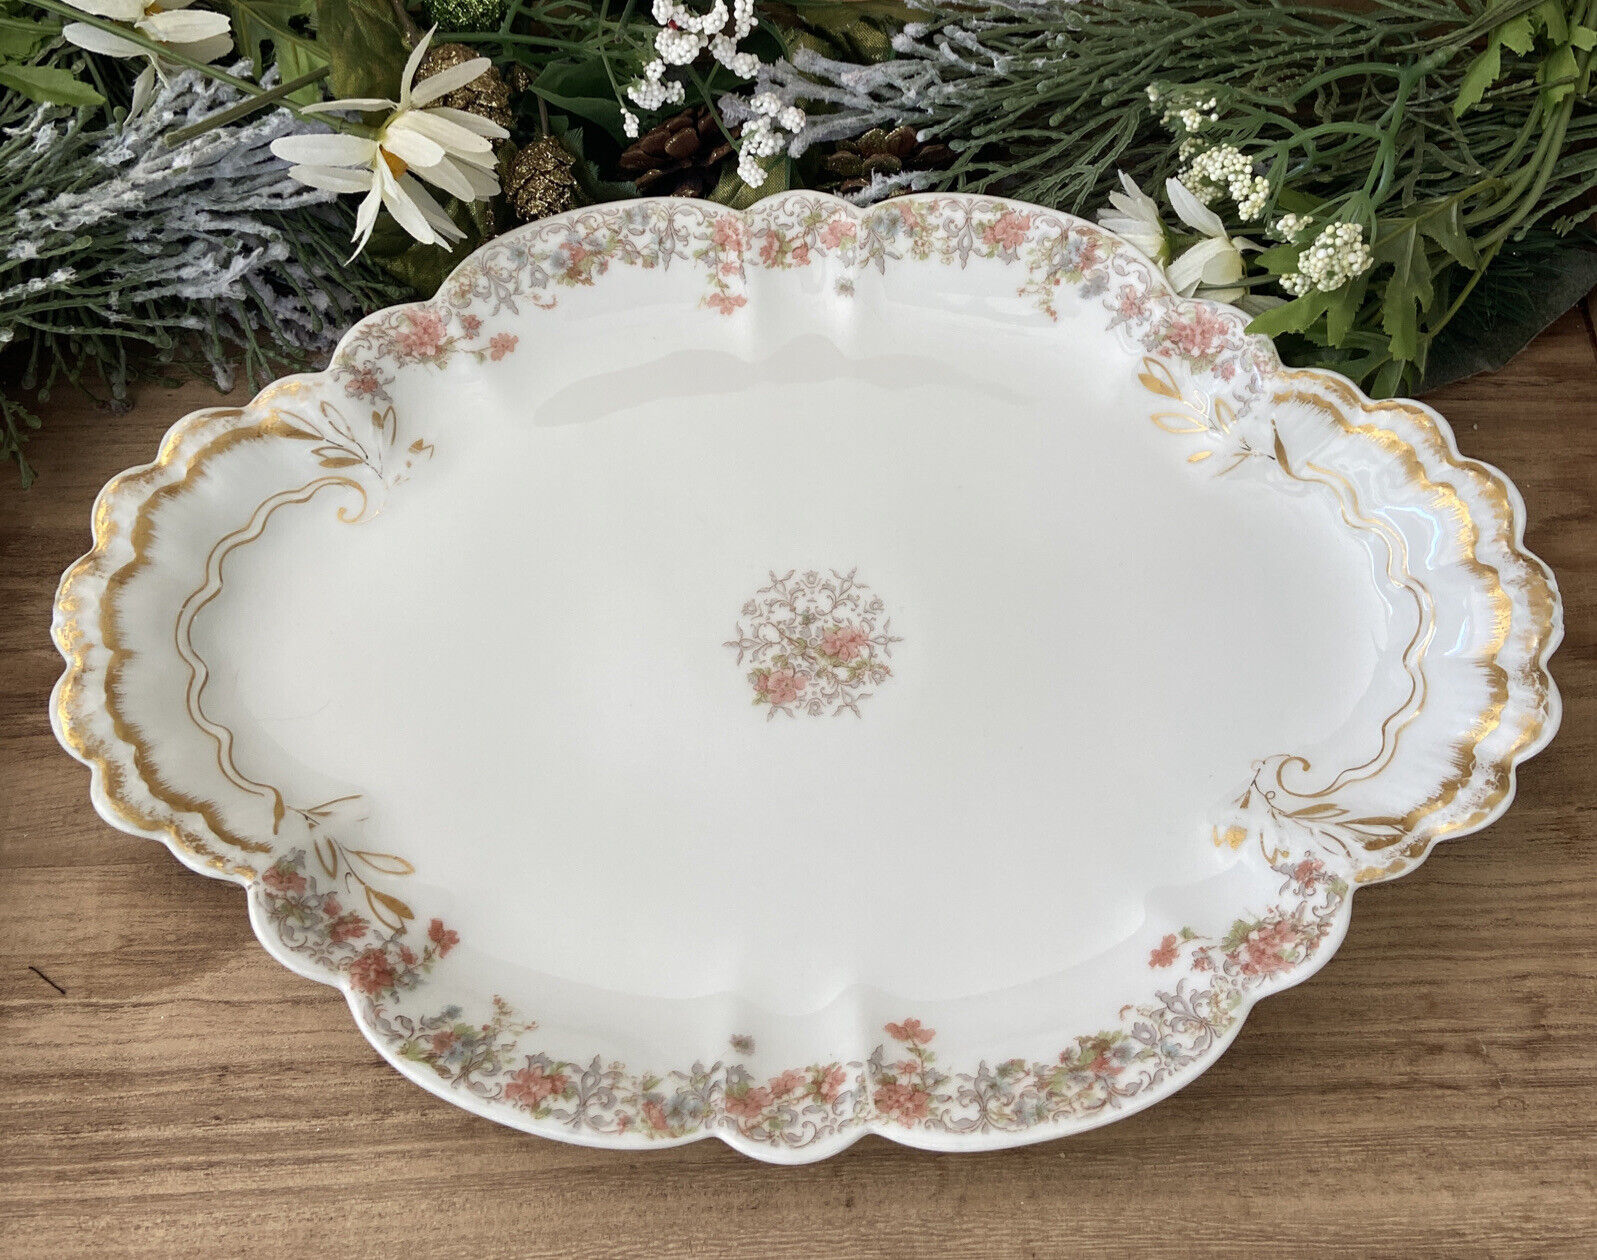 Haviland Limoges Floral Platter Serving Tray Dish France Antique 9.25”x13.25”